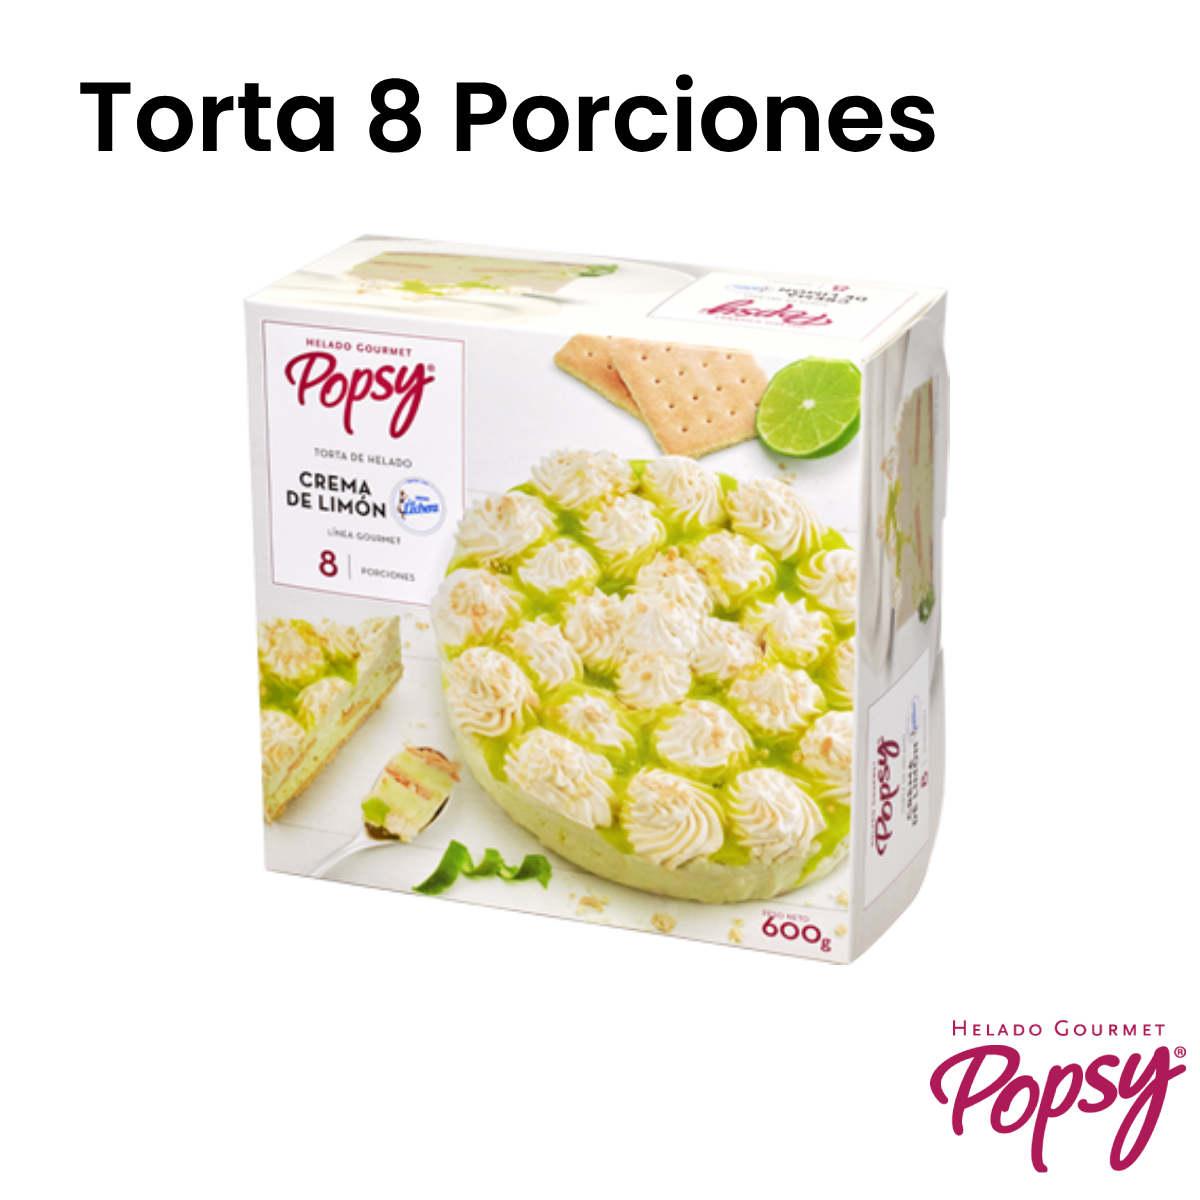 Bono Torta 8 Porciones - Popsy